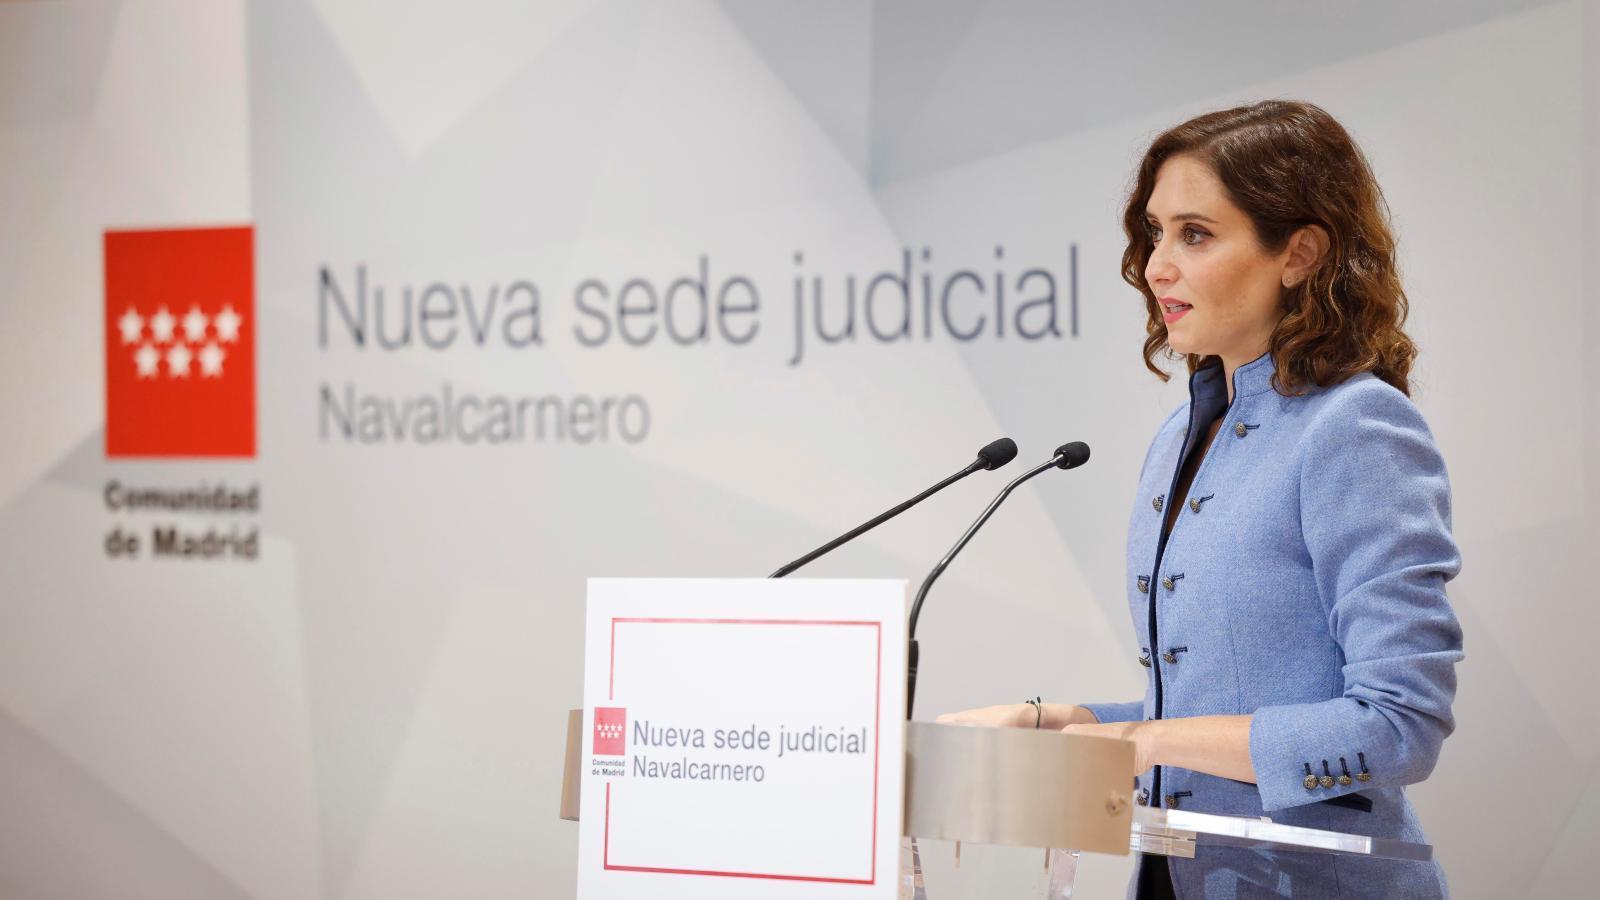 Ayuso inaugura la nueva sede judicial de Navalcarnero tras 9 millones invertidos